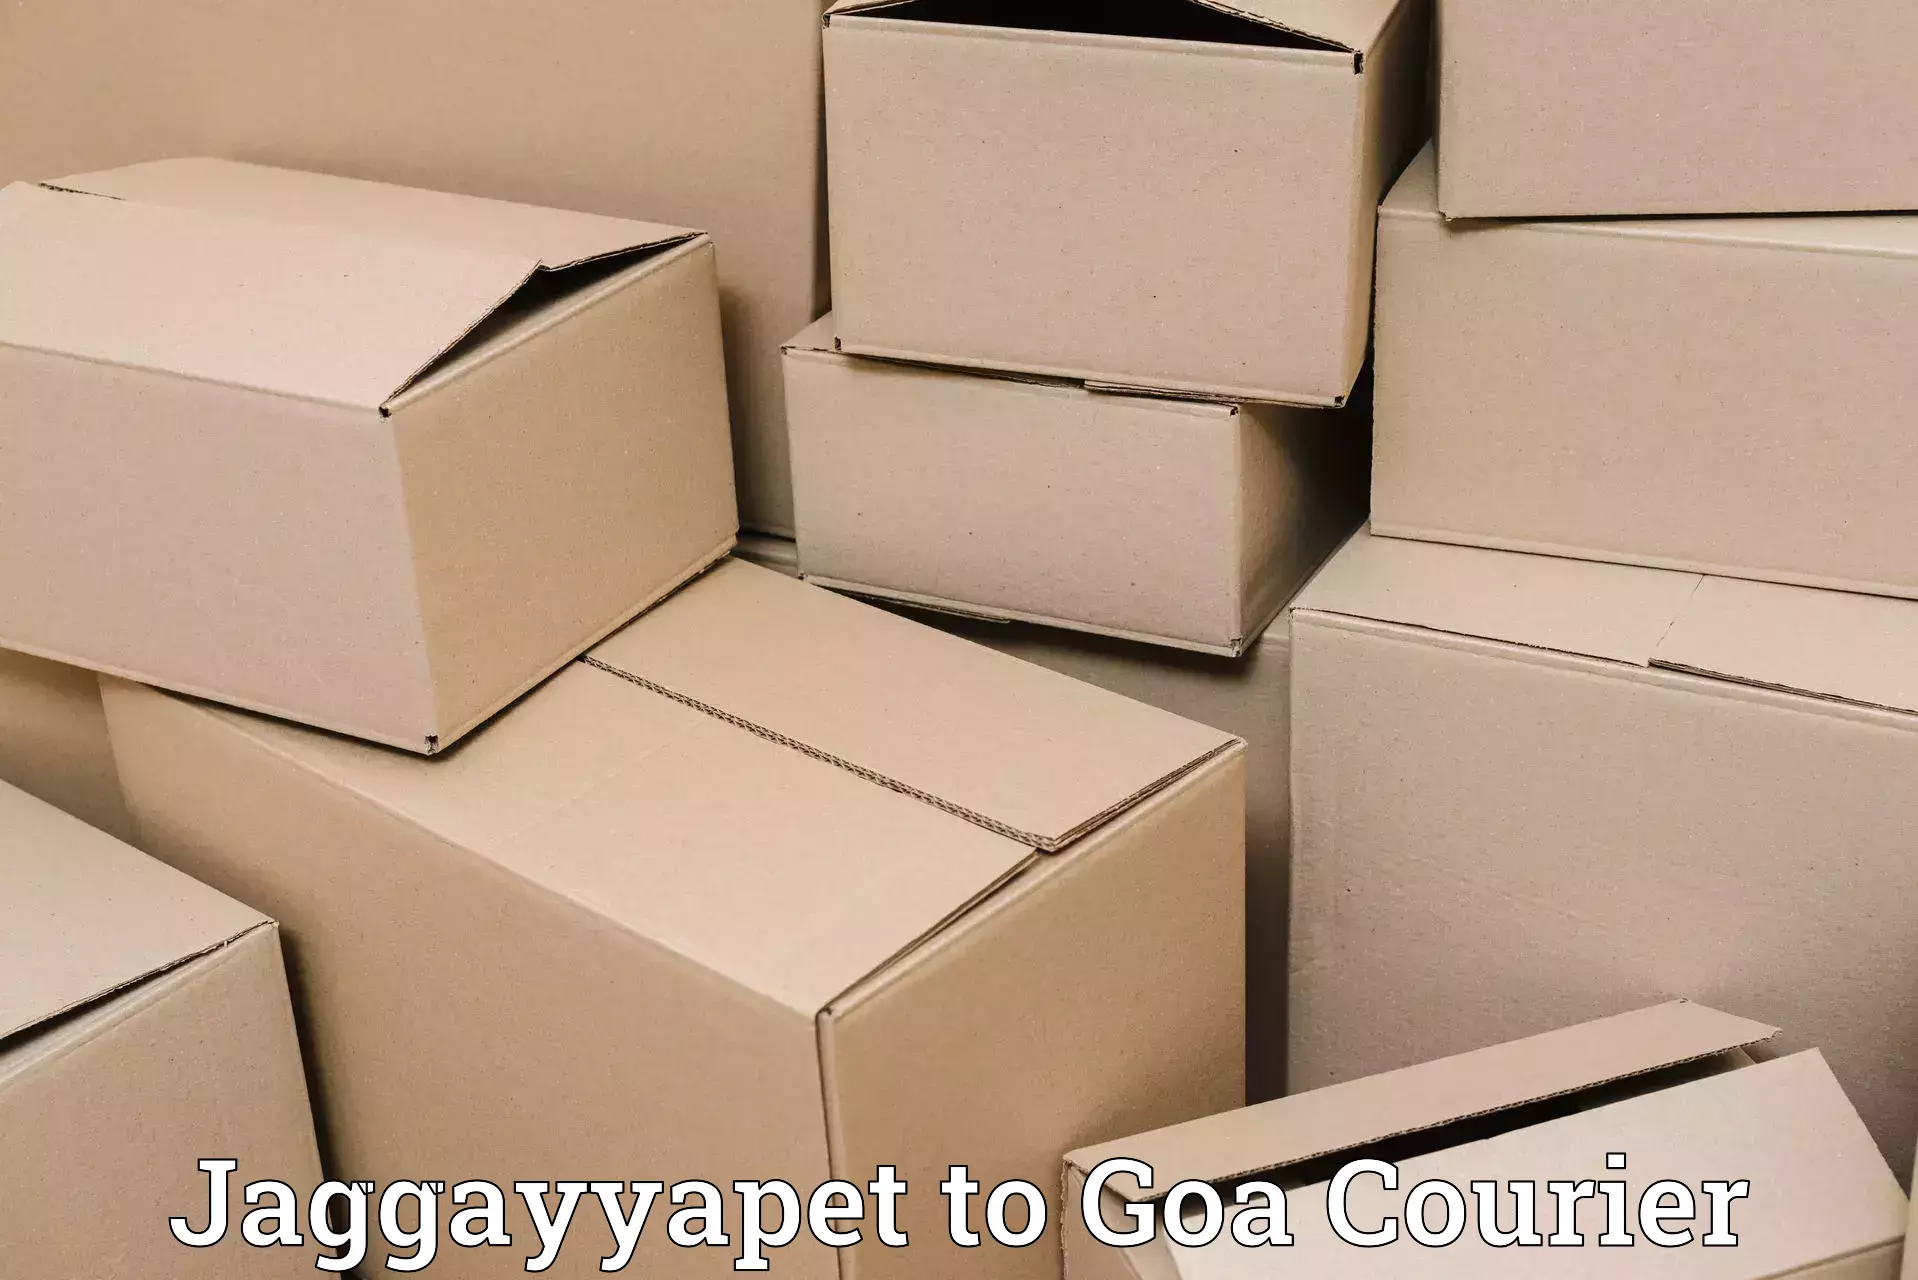 Advanced courier platforms Jaggayyapet to Panjim